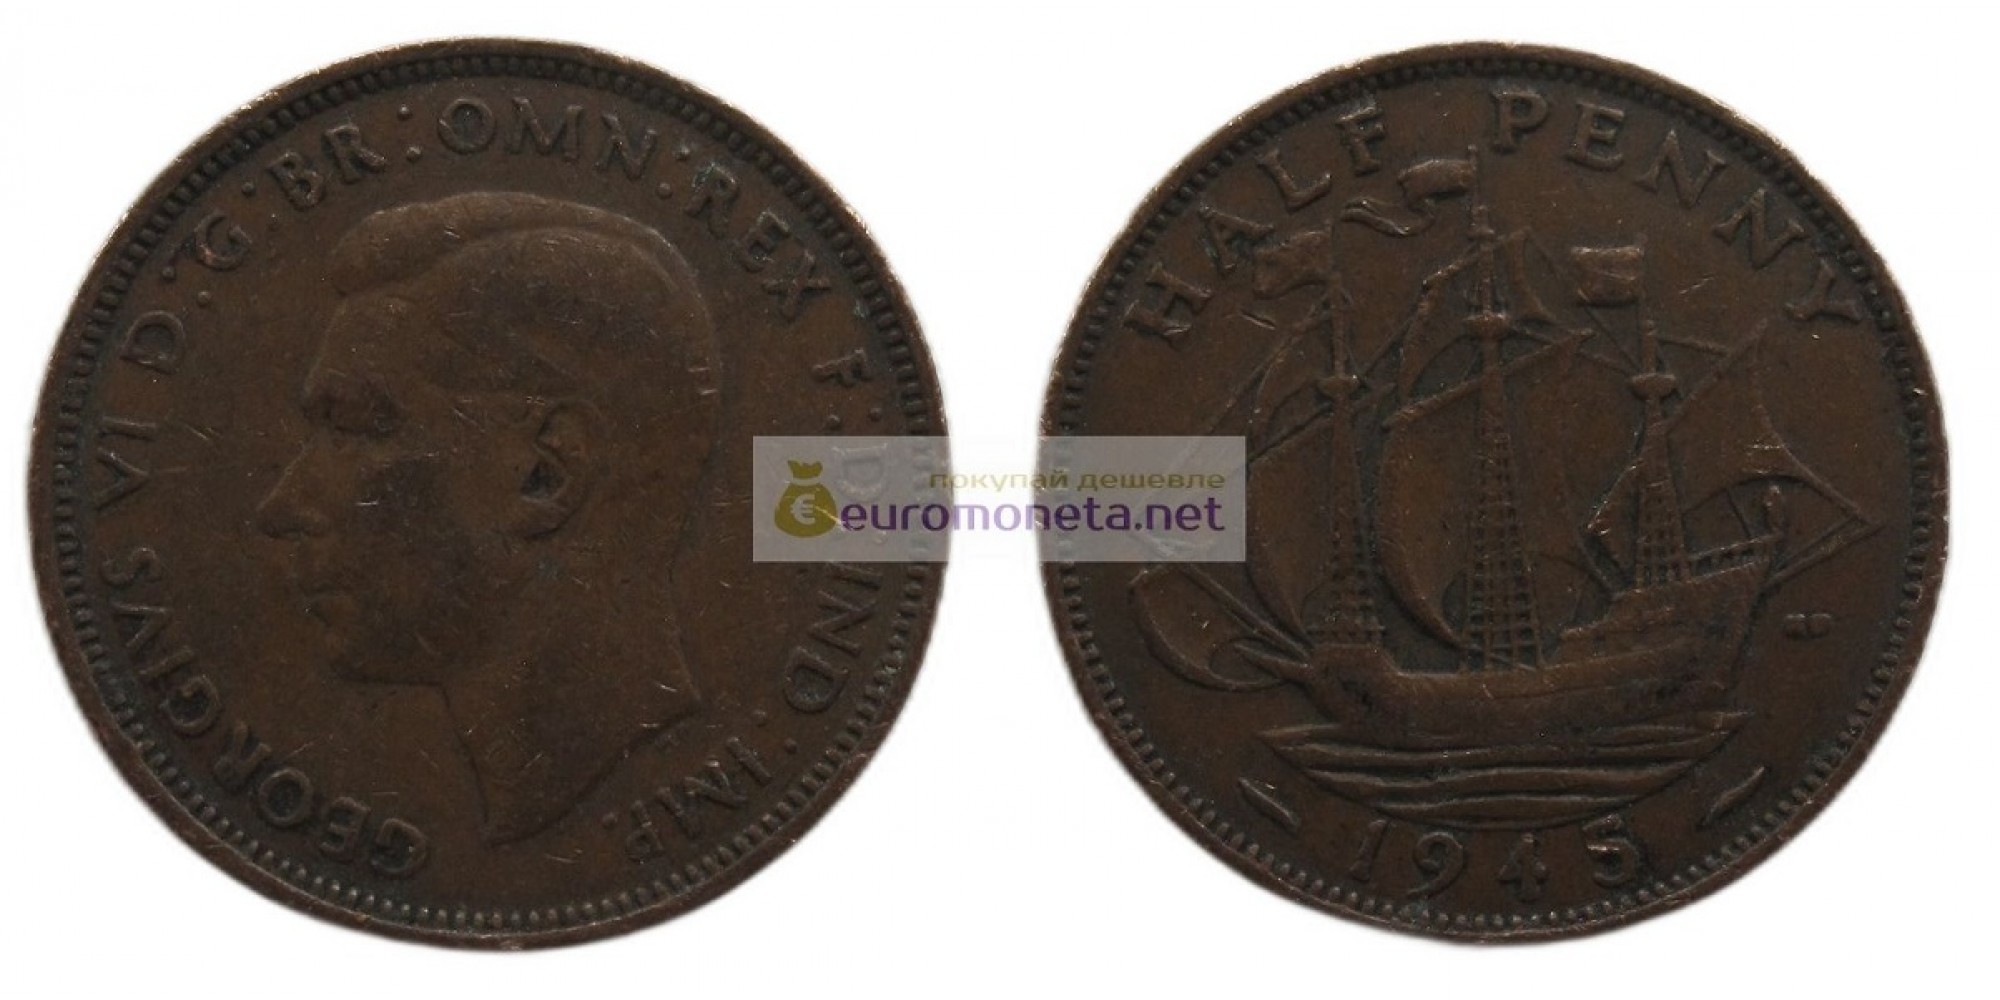 Великобритания 1/2 пенни (полпенни) 1945 год. Король Георг VI